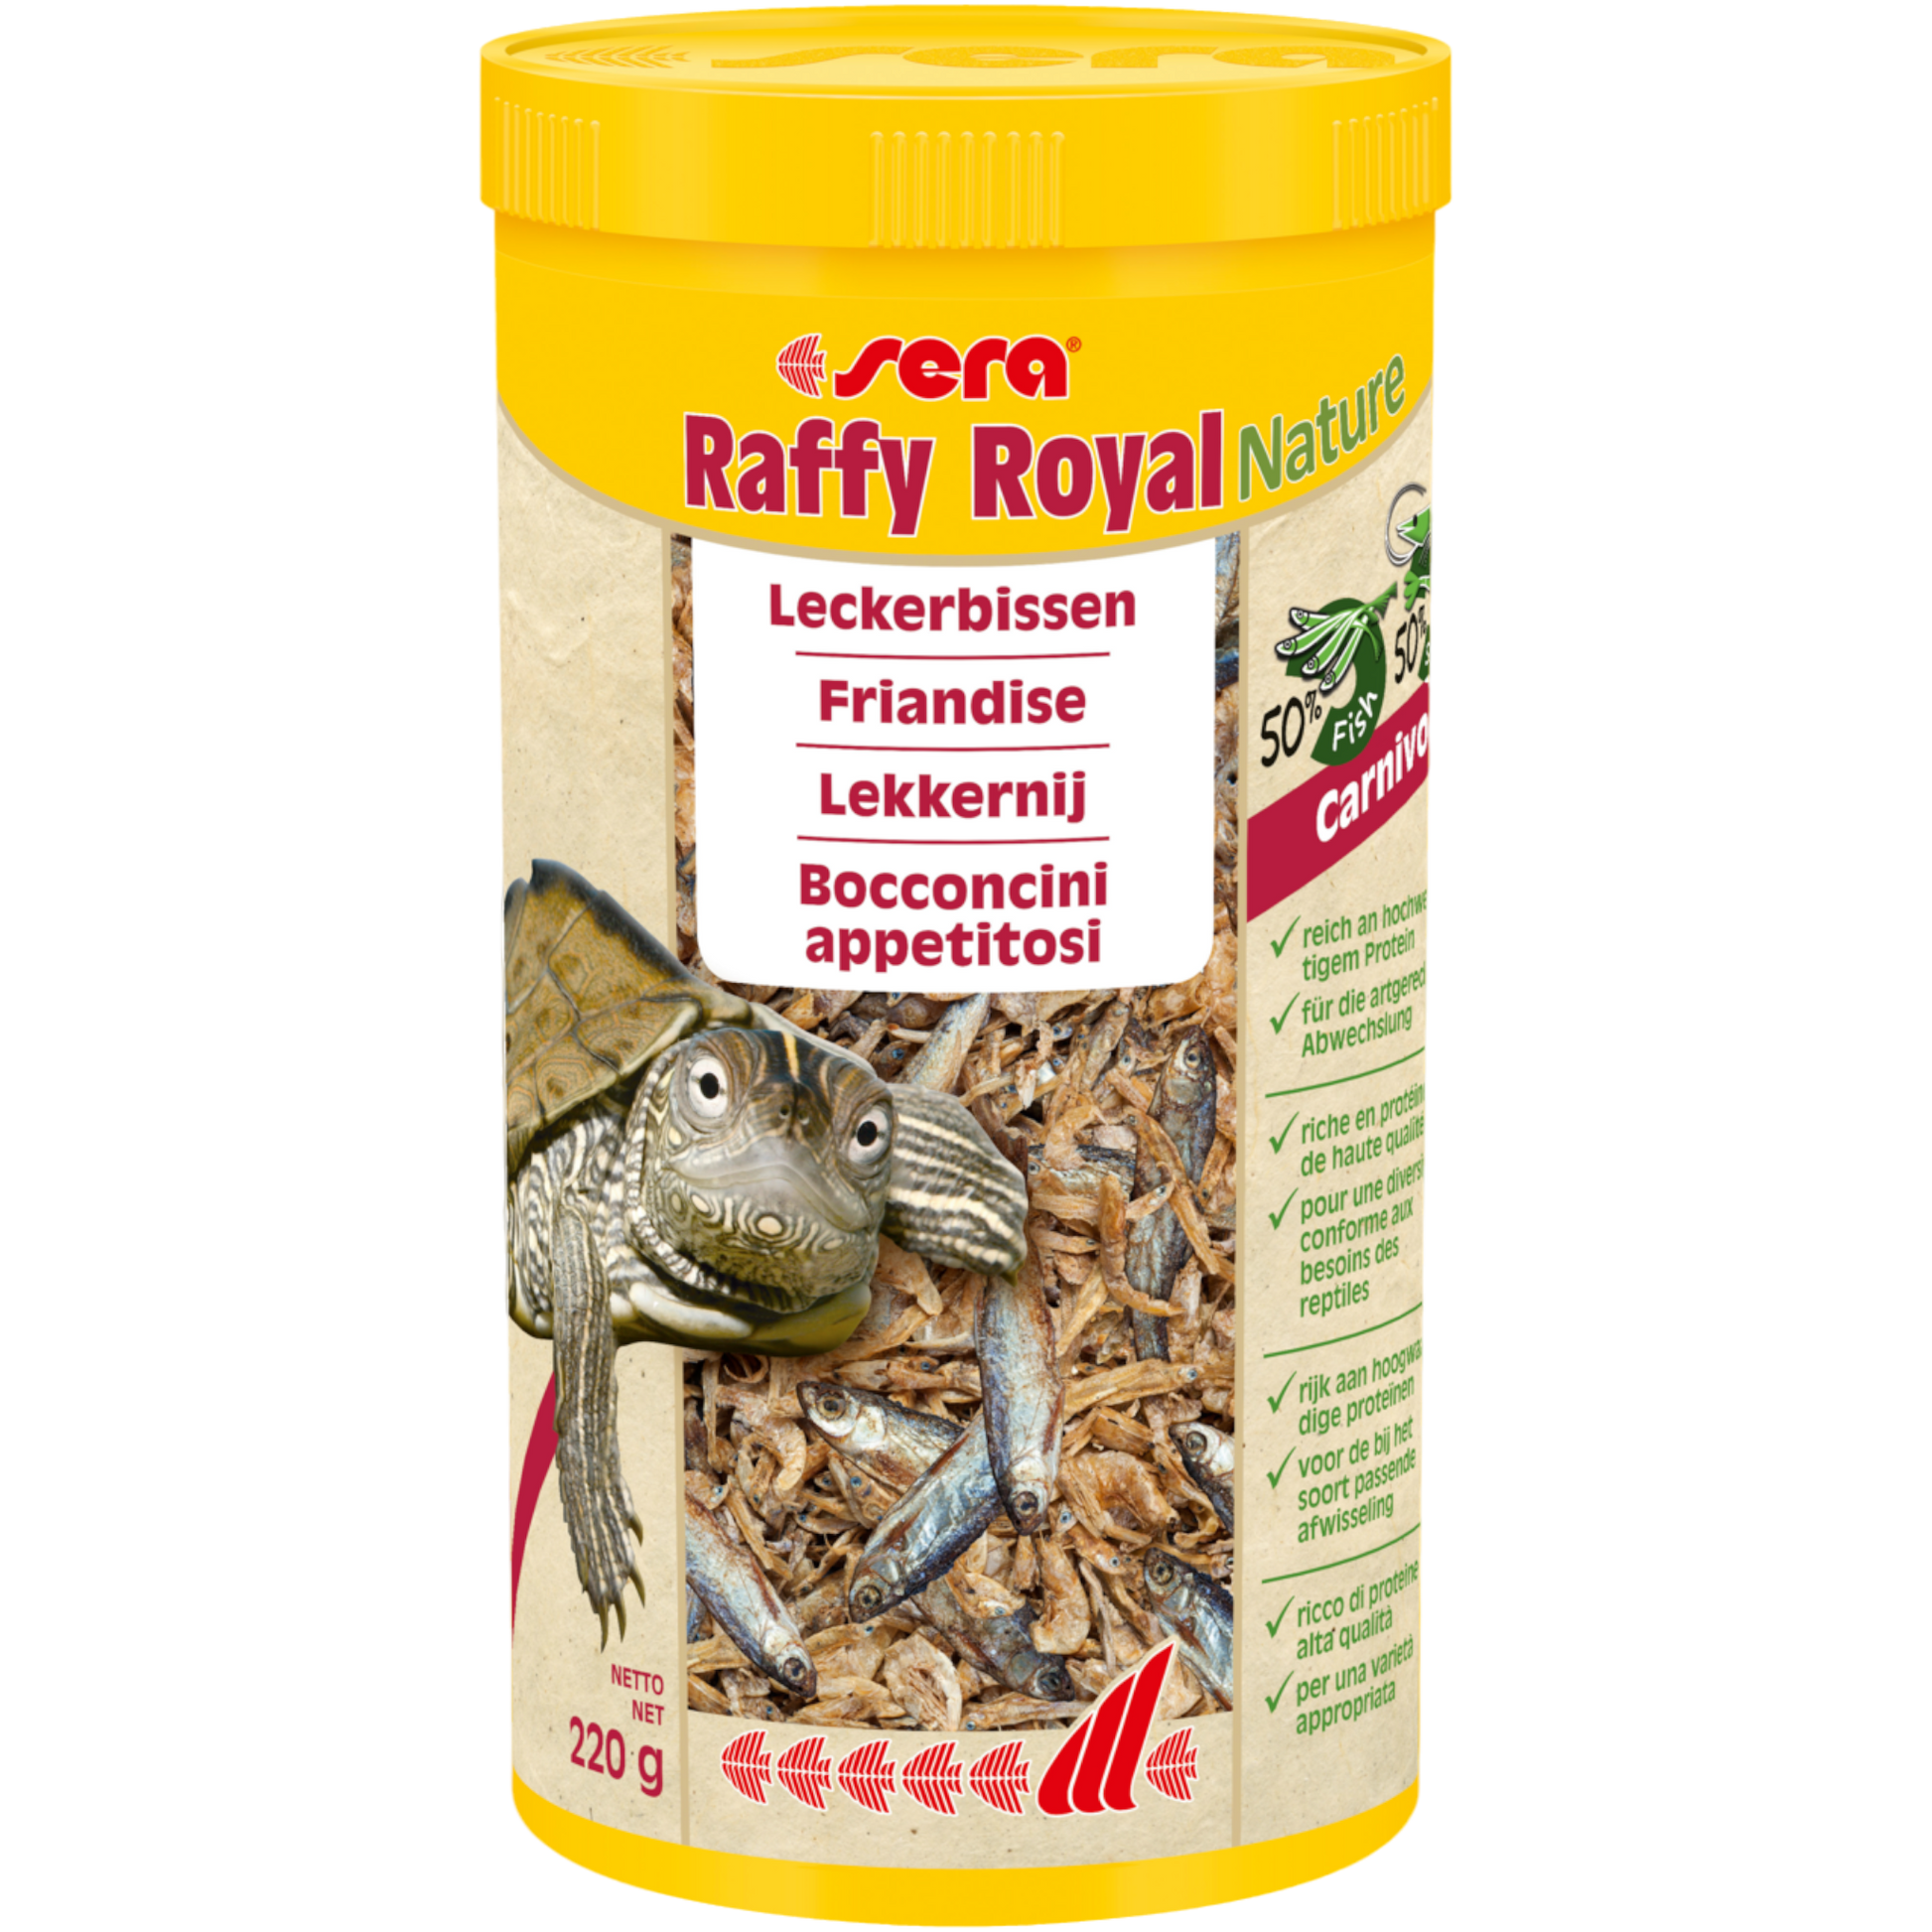 sera Raffy Royal Nature ist der Leckerbissen ohne Farb- und Konservierungsstoffe aus naturbelassenen, schonend getrockneten Fischen (50 %) und Garnelen (50 %). Es ist der besondere Snack für Wasserschildkröten sowie andere größere carnivore Reptilien, Amphibien und große räuberische Zierfische.